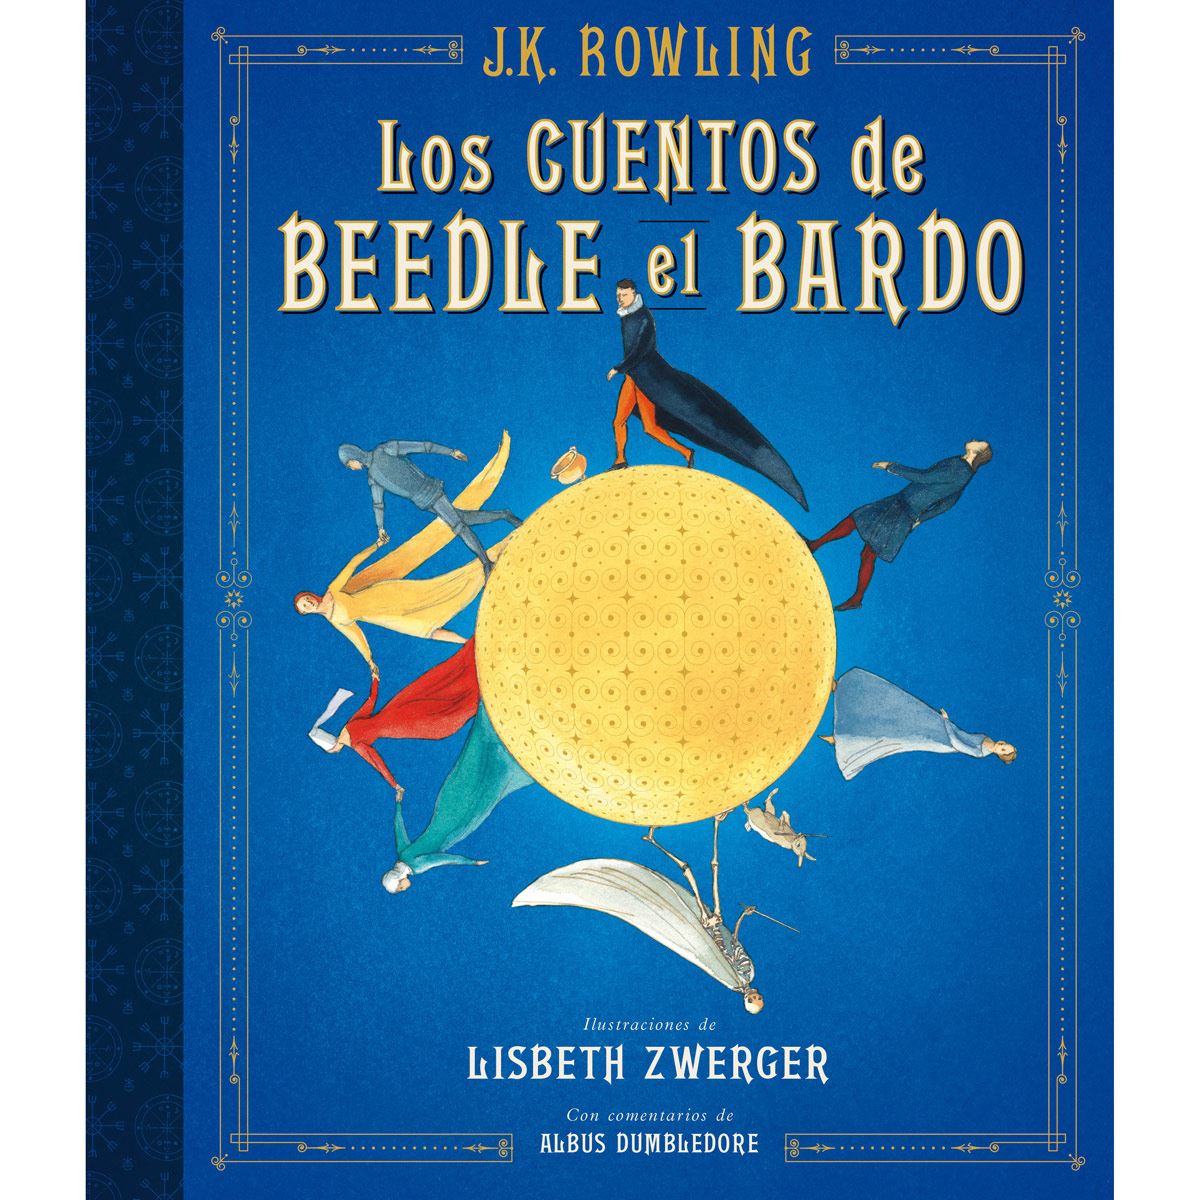 Los cuentos de Beedle el bardo (Edición ilustrada)